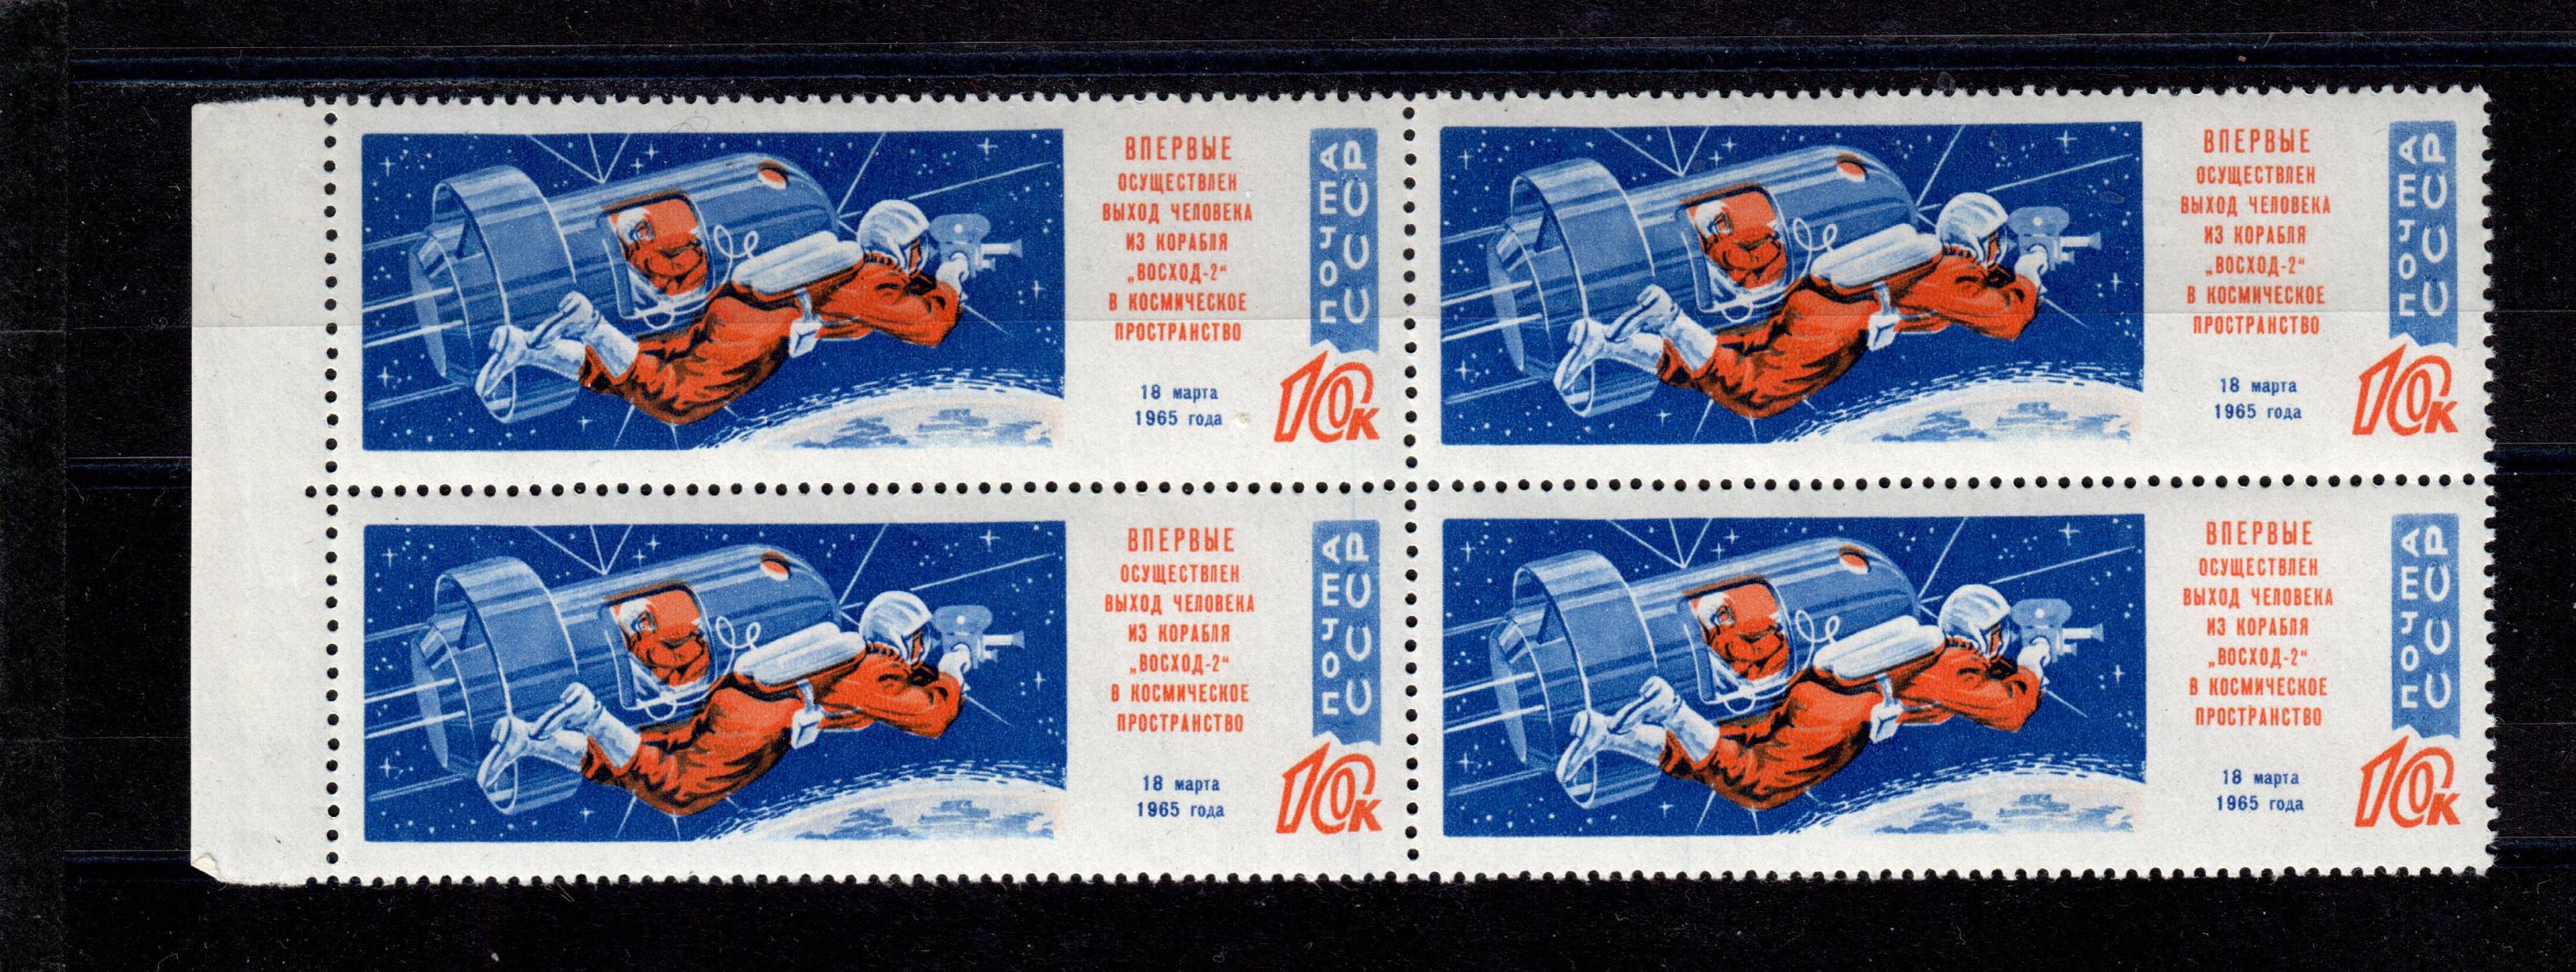 Почтовые марки космос СССР 1965